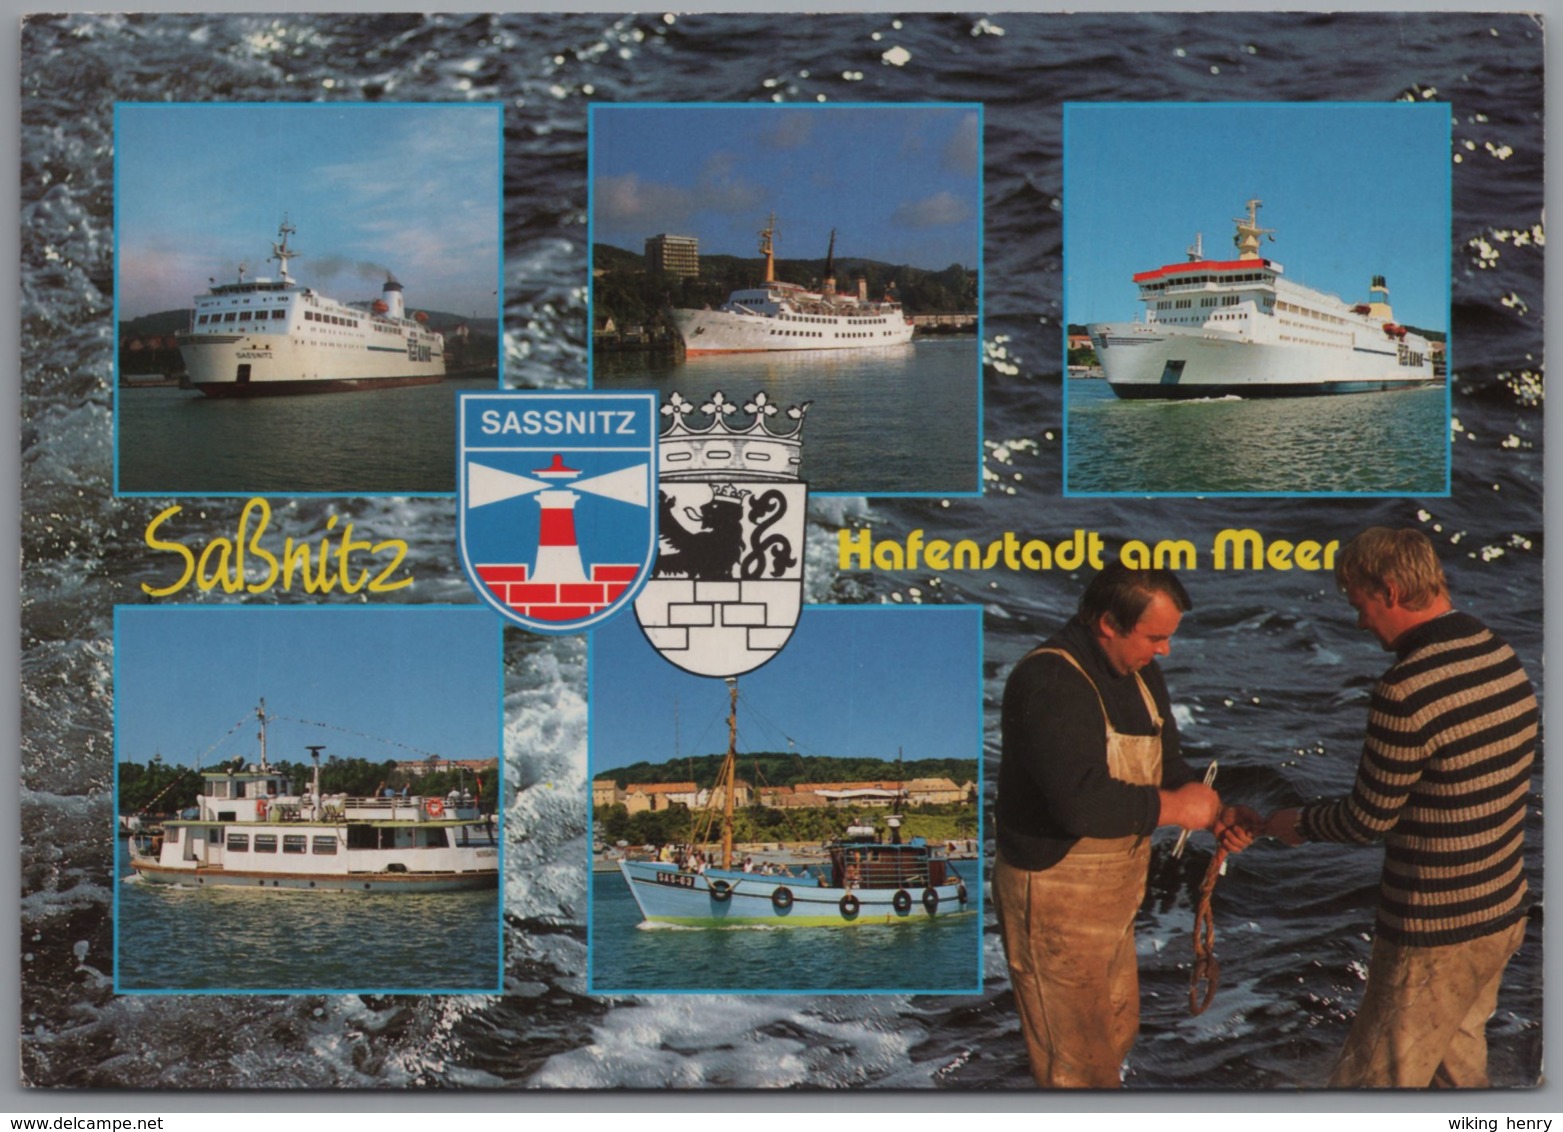 Sassnitz Auf Rügen - Mehrbildkarte 2   Großbildkarte Mit Schiffen - Sassnitz